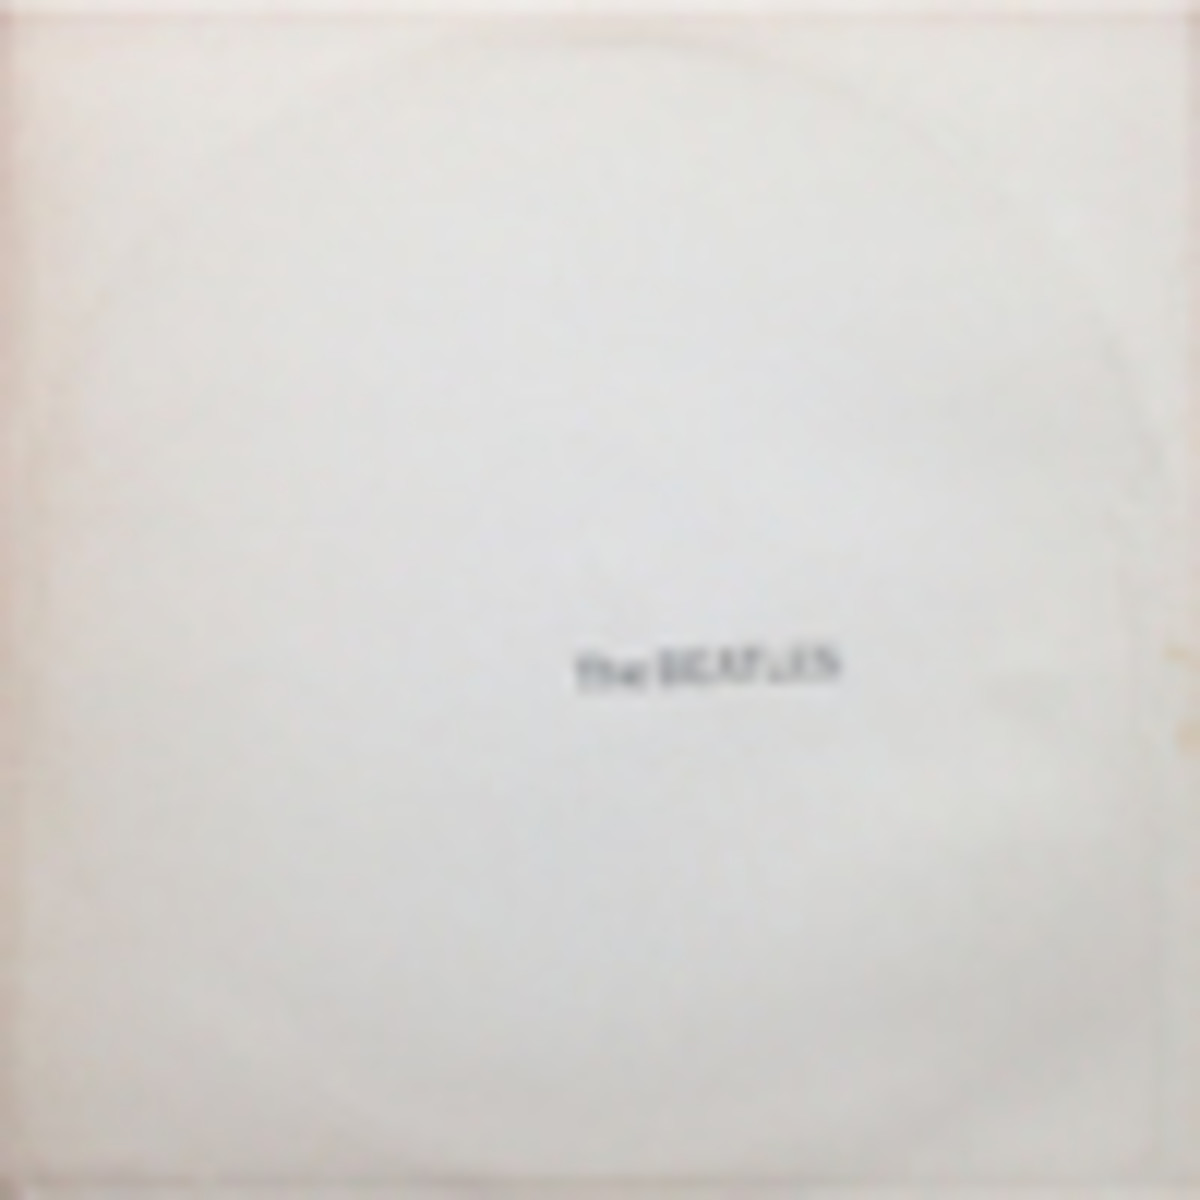 The Bealtes White Album